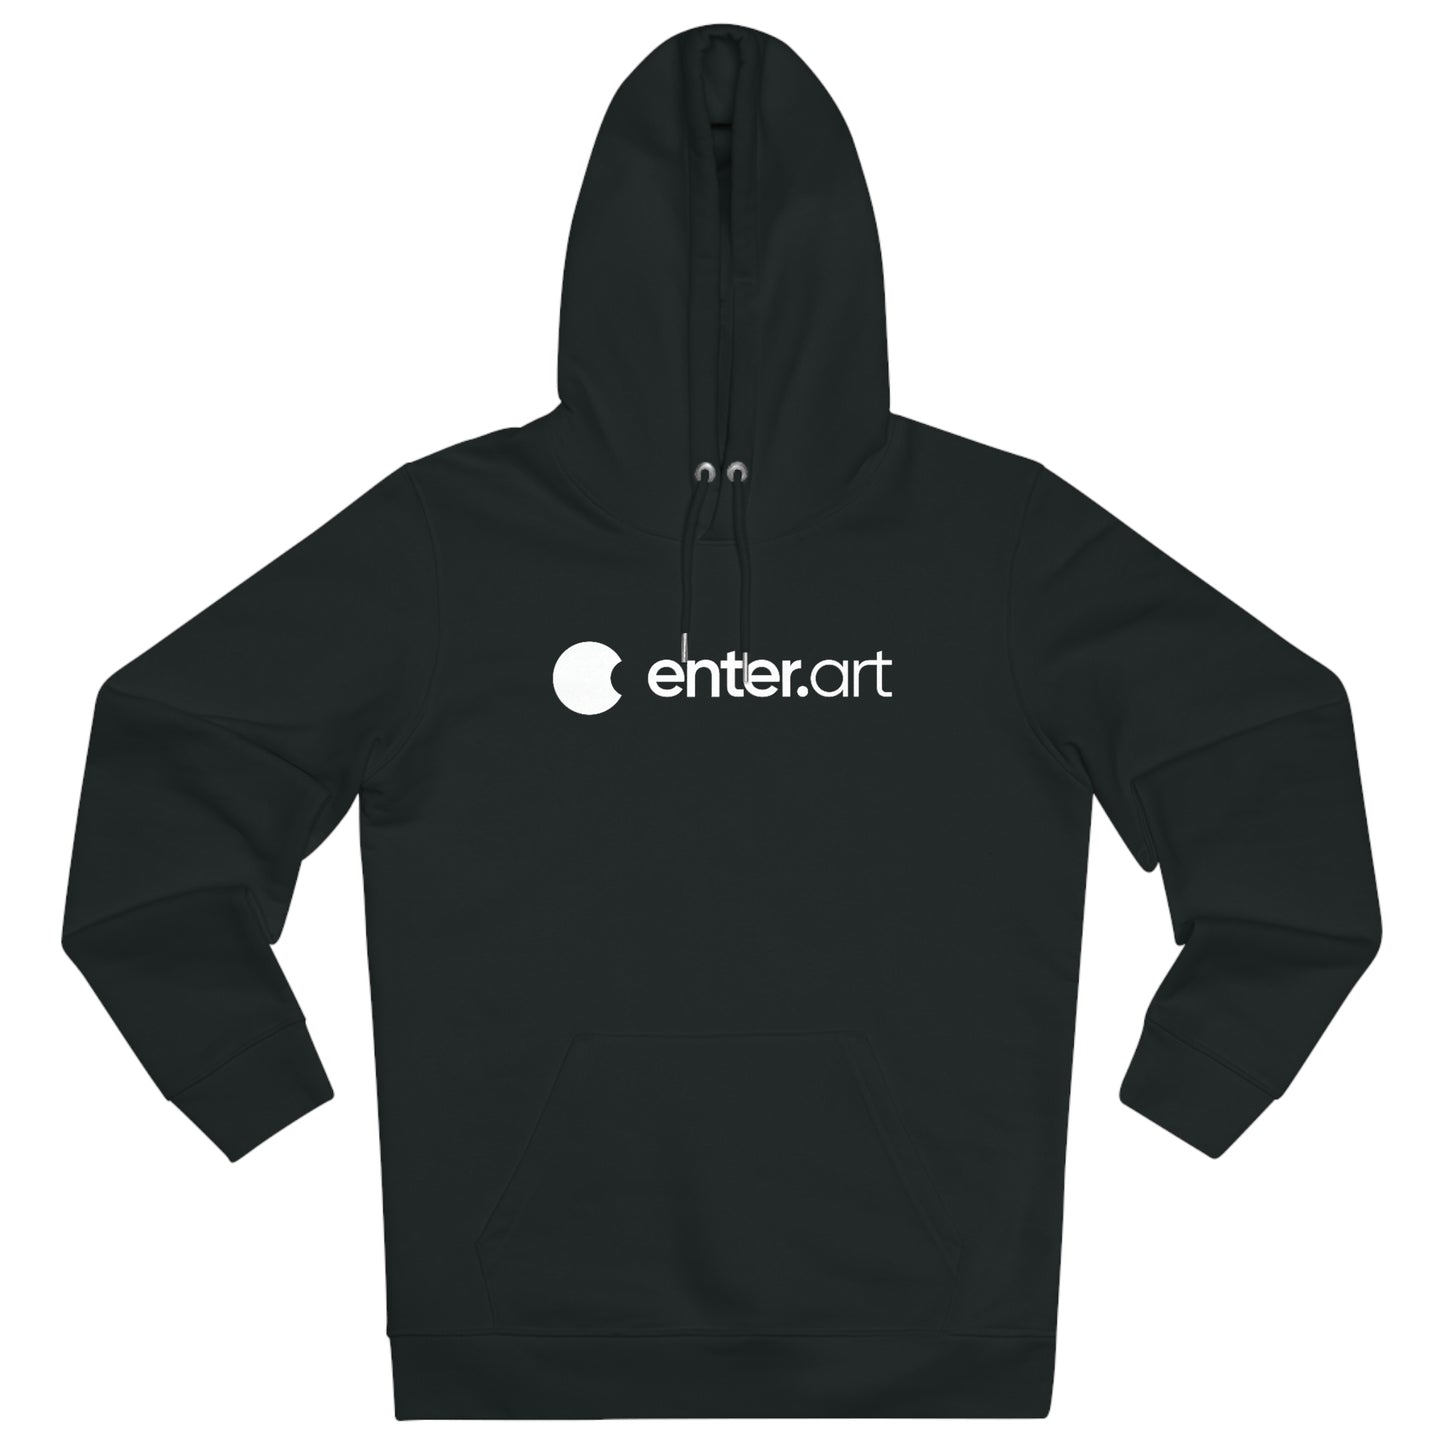 enter.art x Ifeelslick - Black hoodie